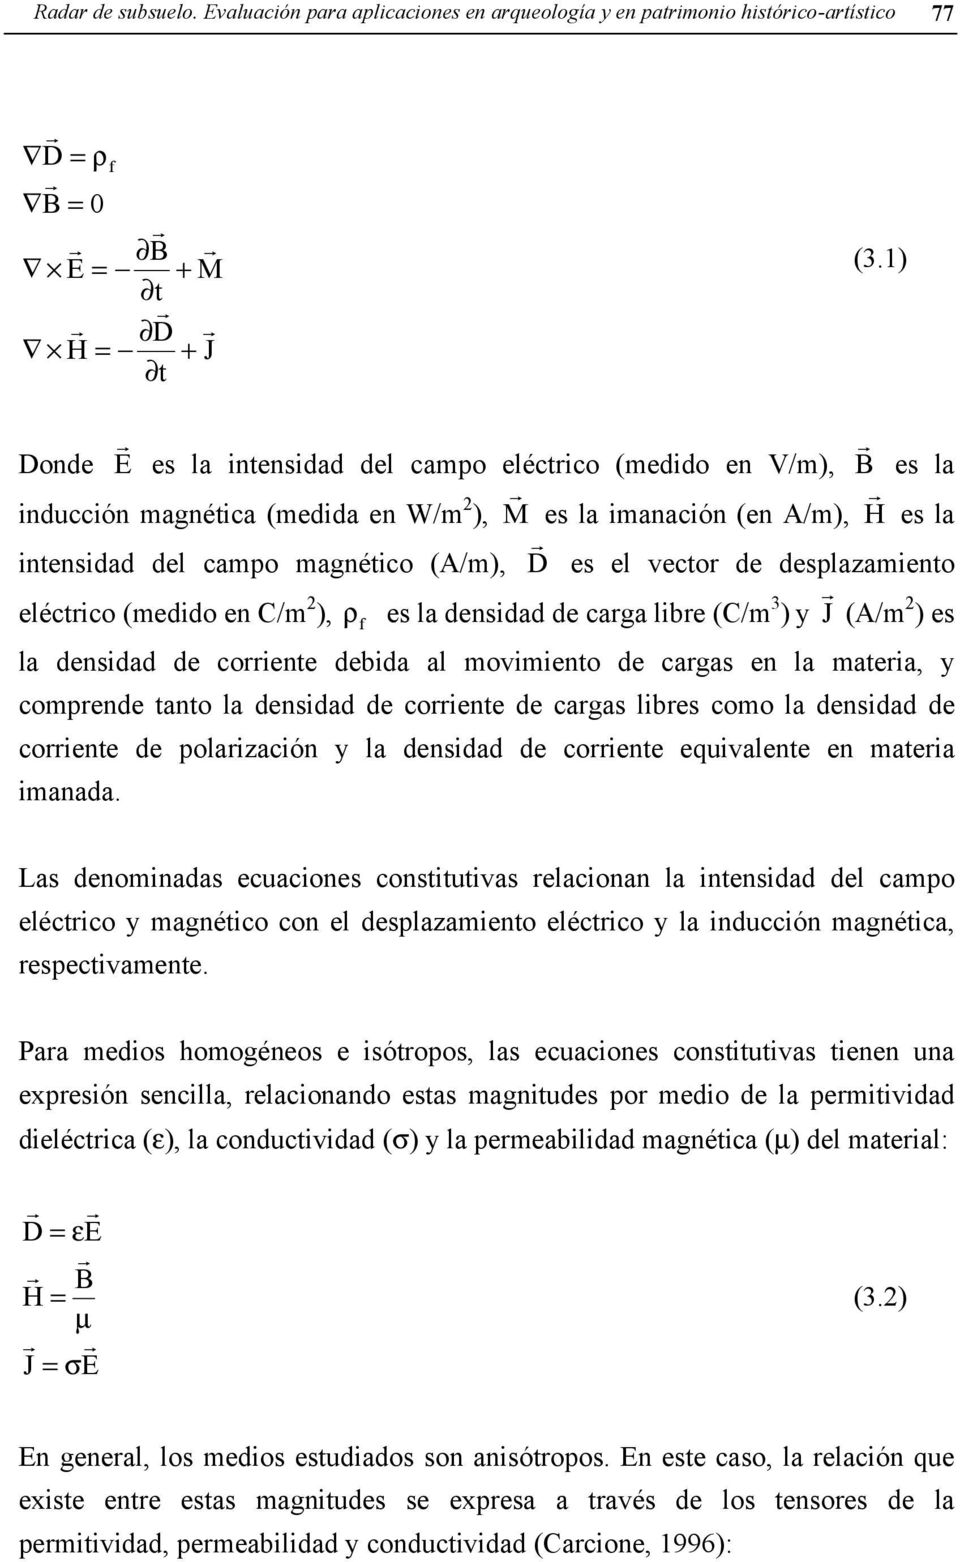 de desplazamiento eléctico (medido en C/m 2 ), ρ f es la densidad de caga libe (C/m 3 ) y J (A/m 2 ) es la densidad de coiente debida al movimiento de cagas en la mateia, y compende tanto la densidad